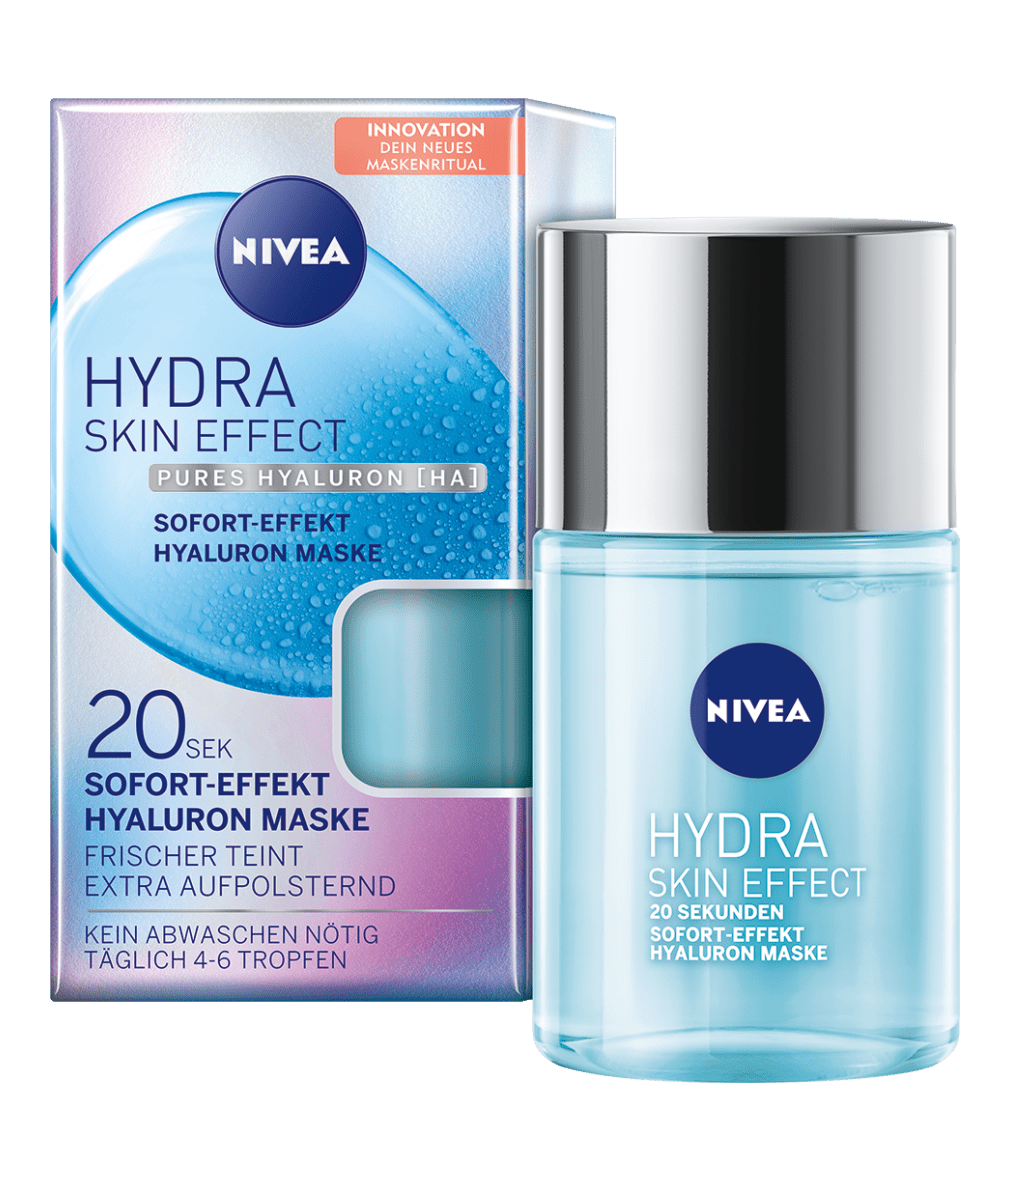 NIVEA Hydra Skin Effect Hyaluron Maske